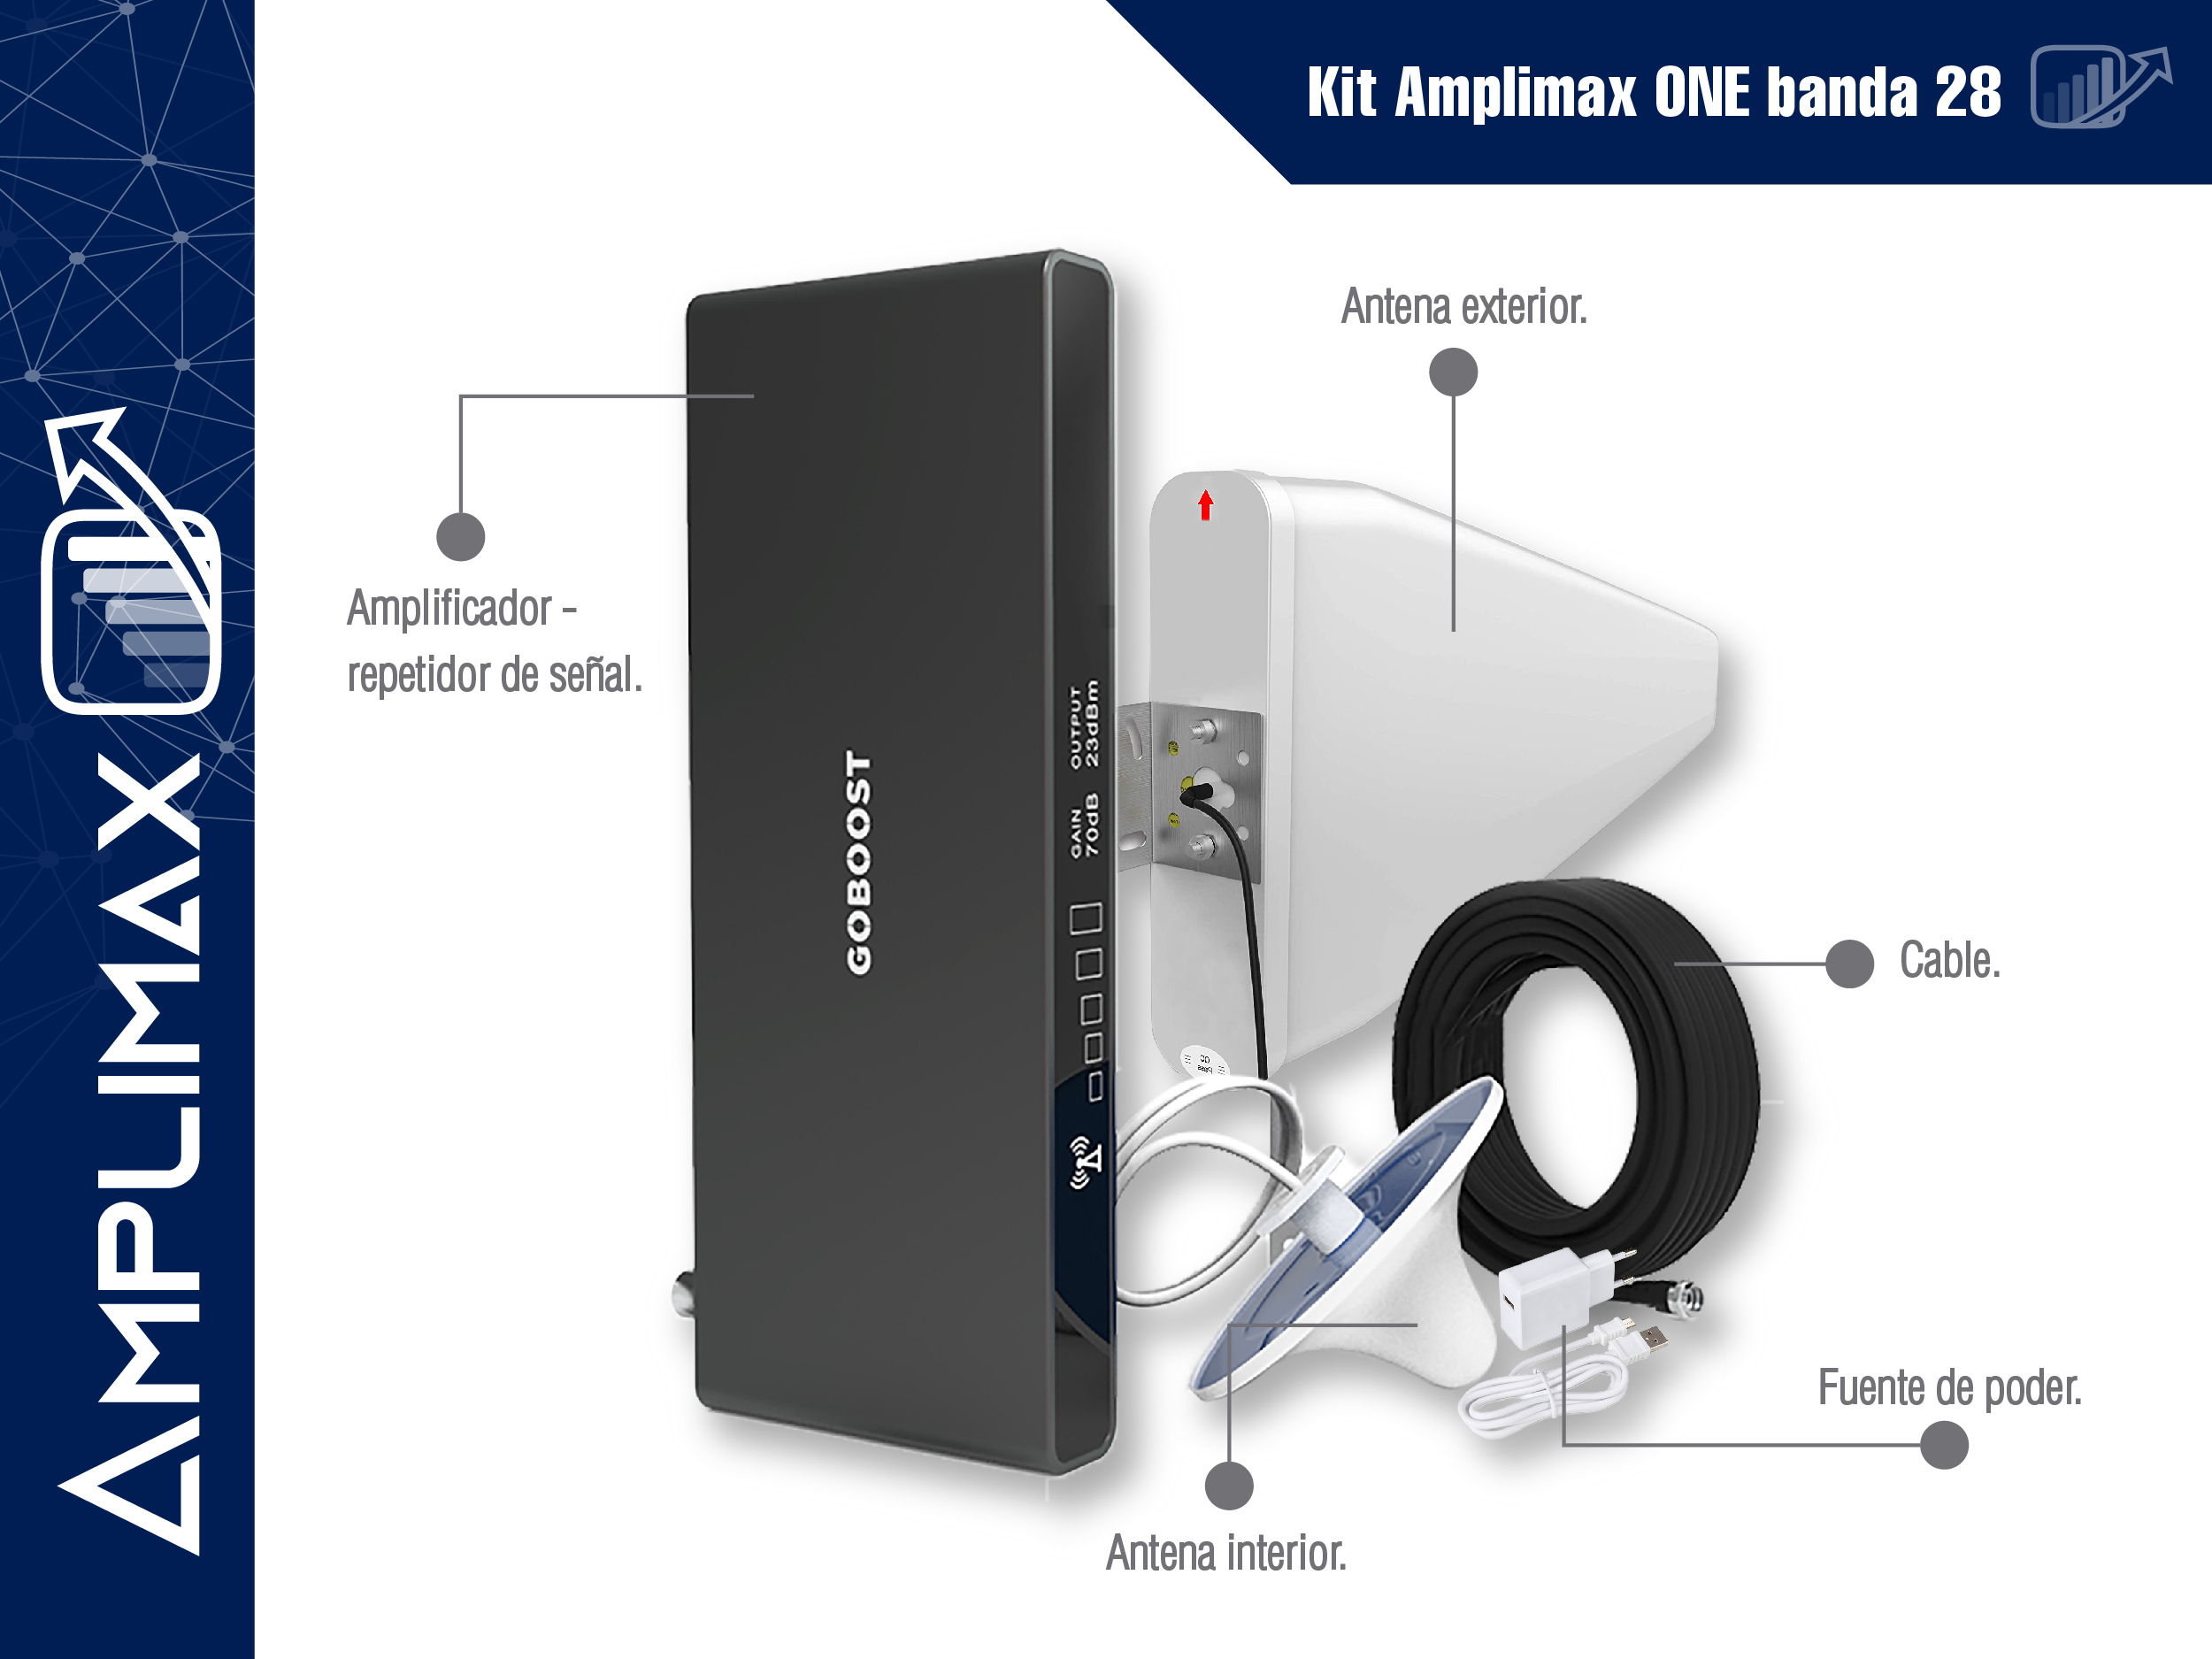 Pro Amplificador de Señal Móvil 3G - 150 m², Repetidor de Señal